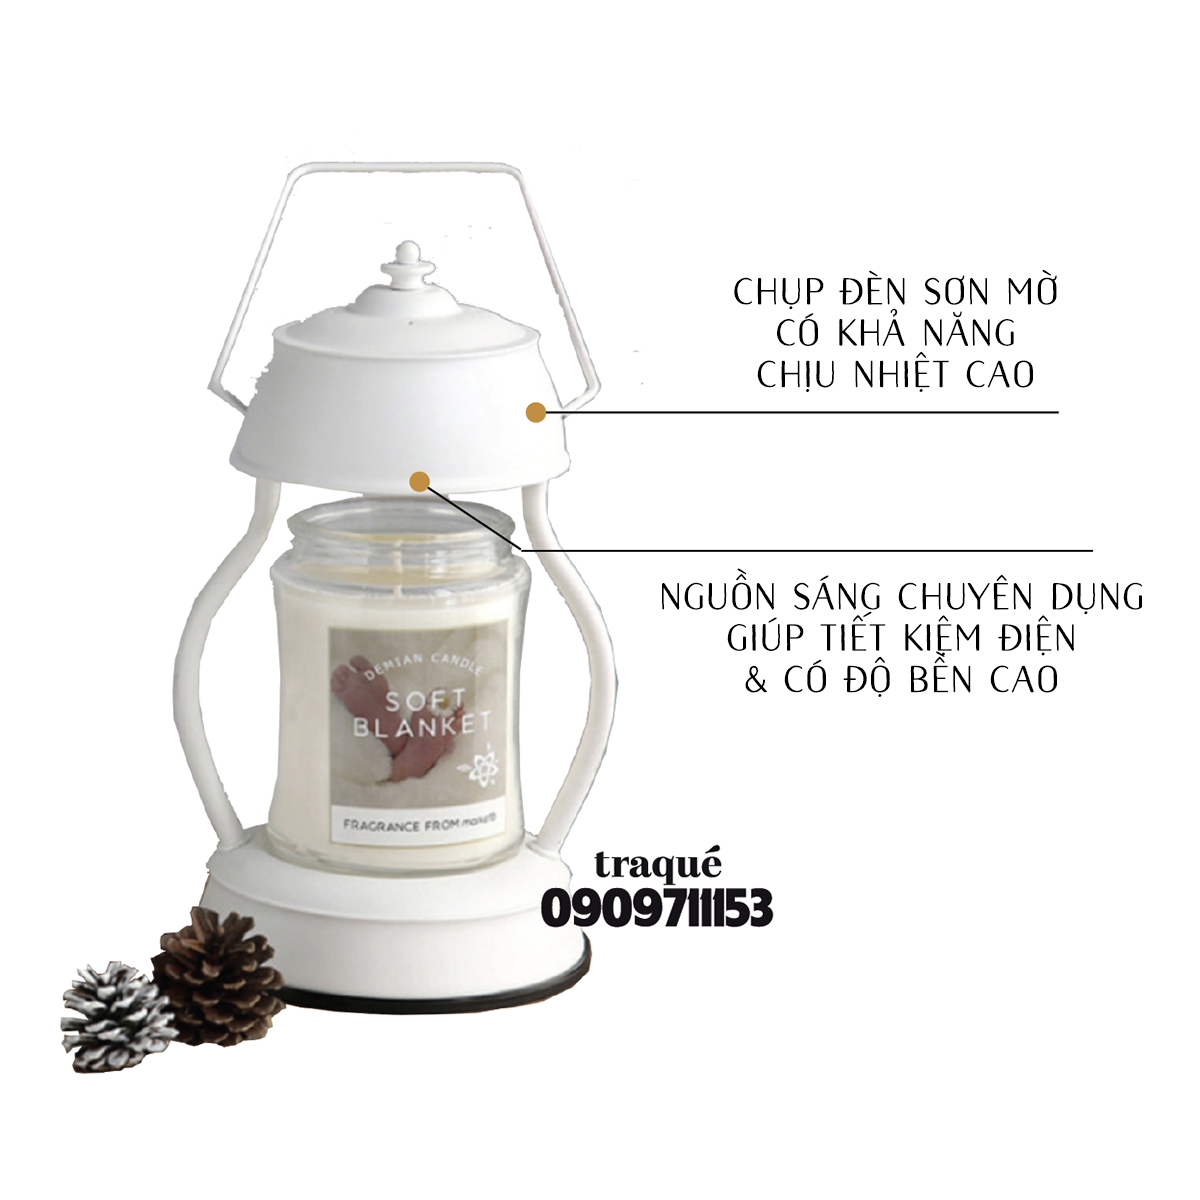 Đèn đốt nến phong cách cổ điện trang nhã - giúp nến toả hương tốt và an toàn hơn khi để qua đêm